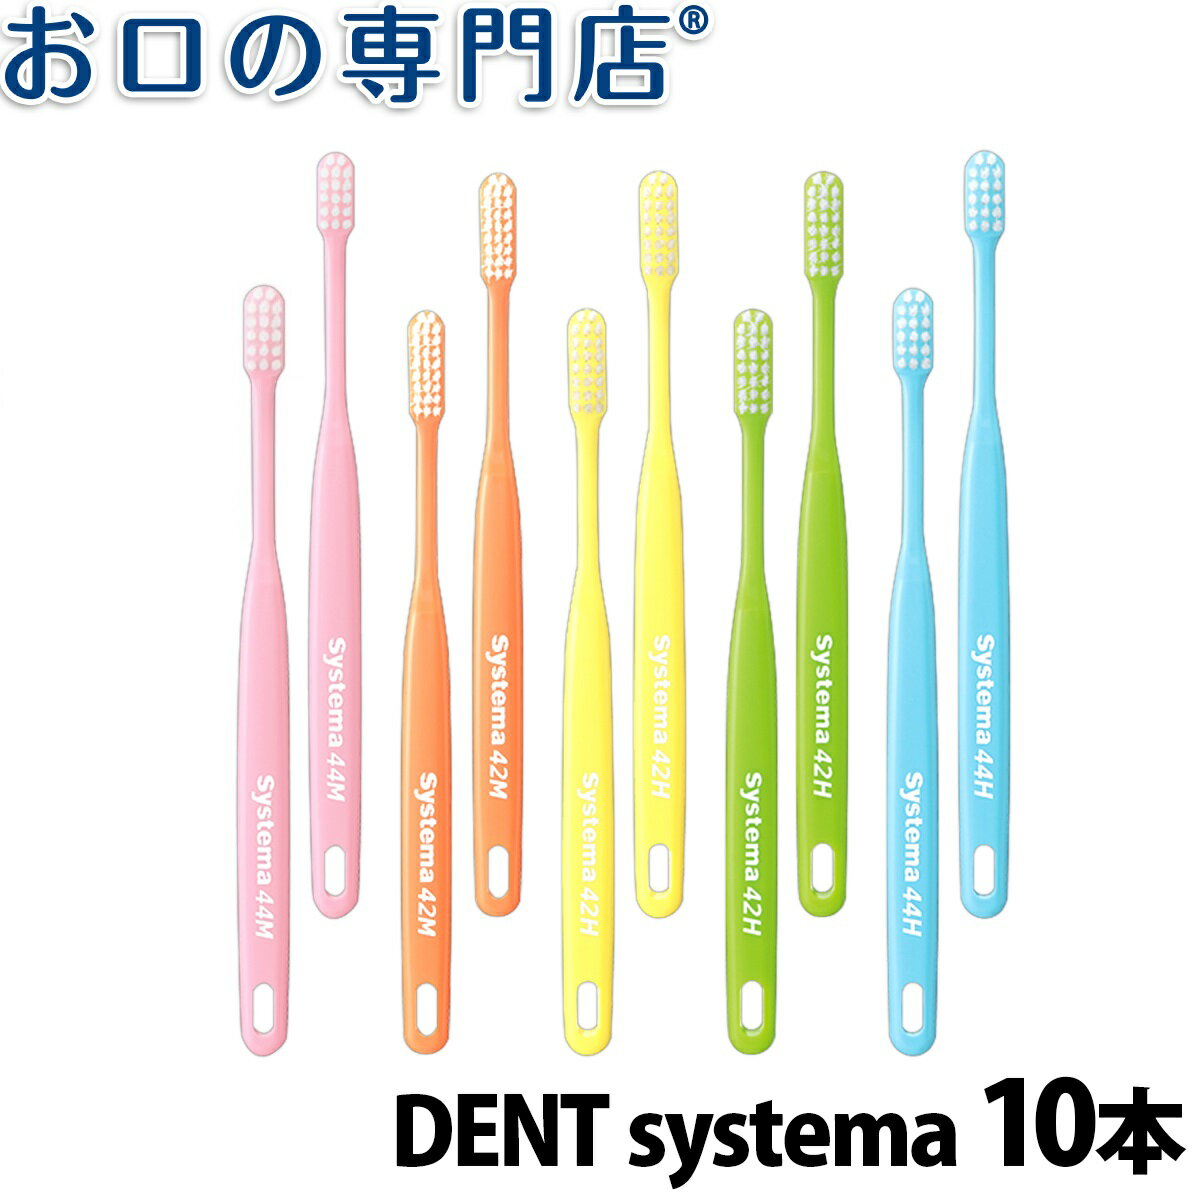 【送料無料】DENT. systema 歯ブラシ 10本【デント システマ】【2色以上のアソート】